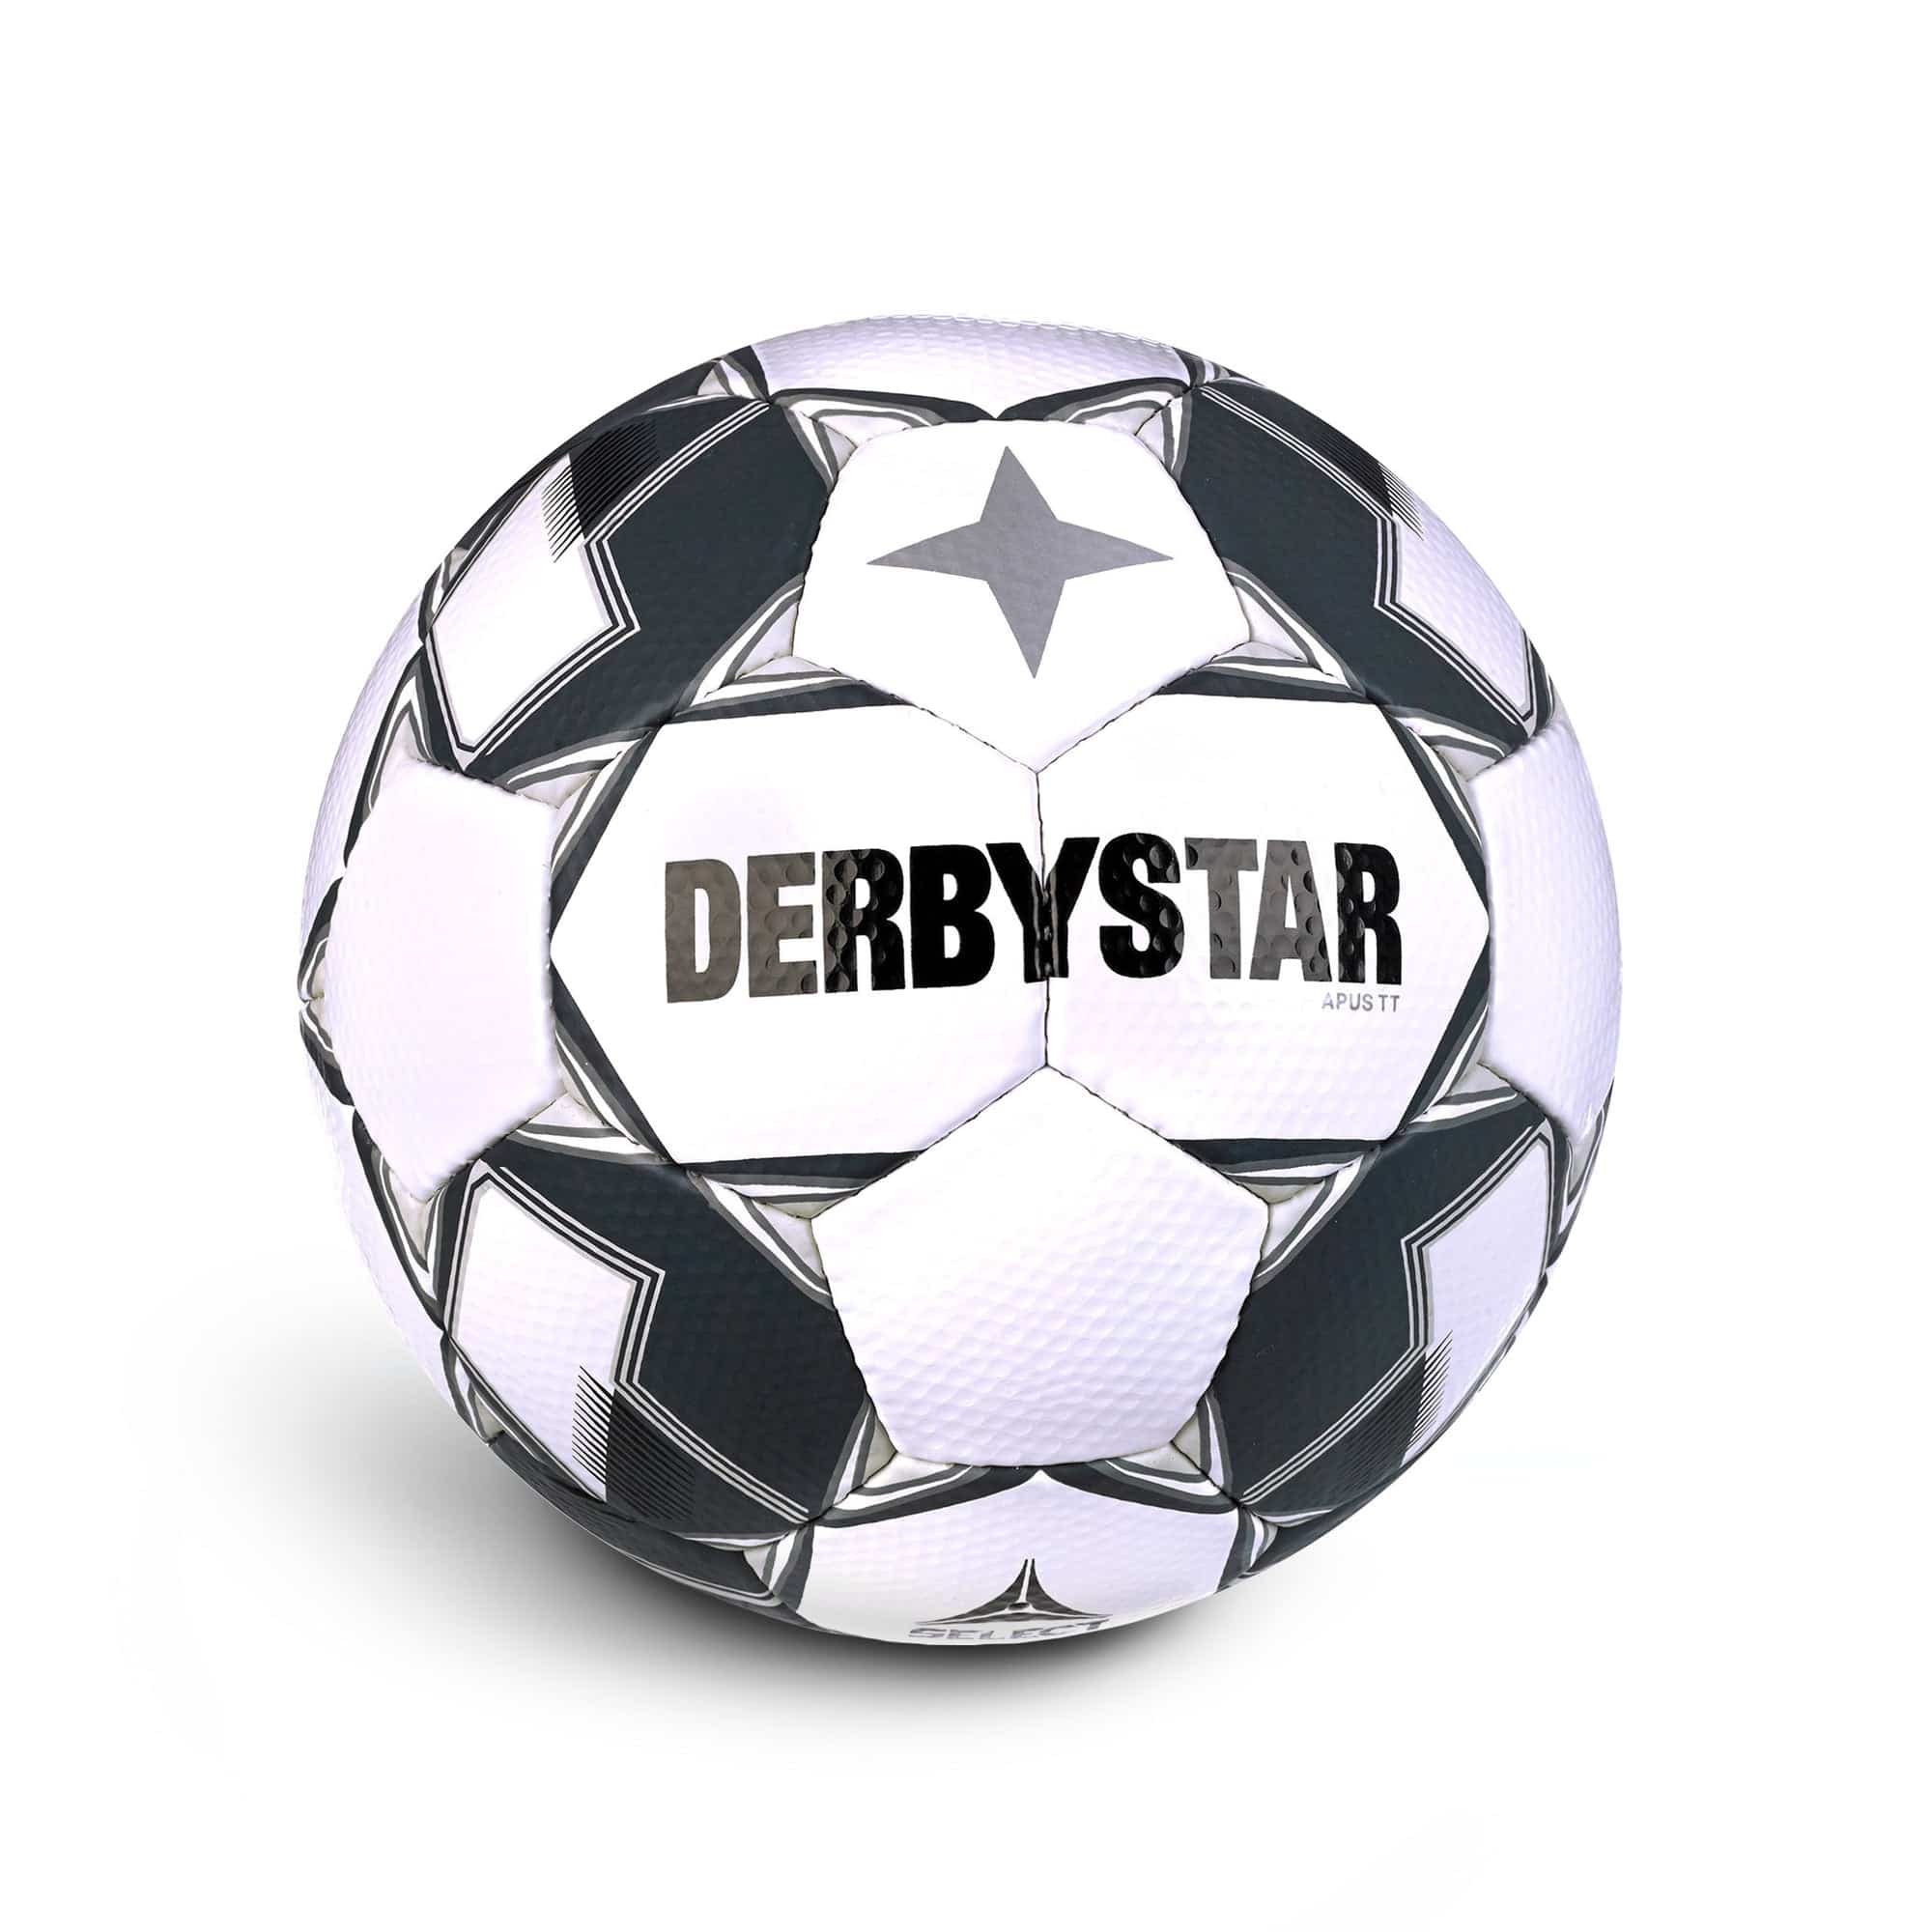 Derbystar Apus TT v23 Trainingsball - Größe 5 - ca. 440g